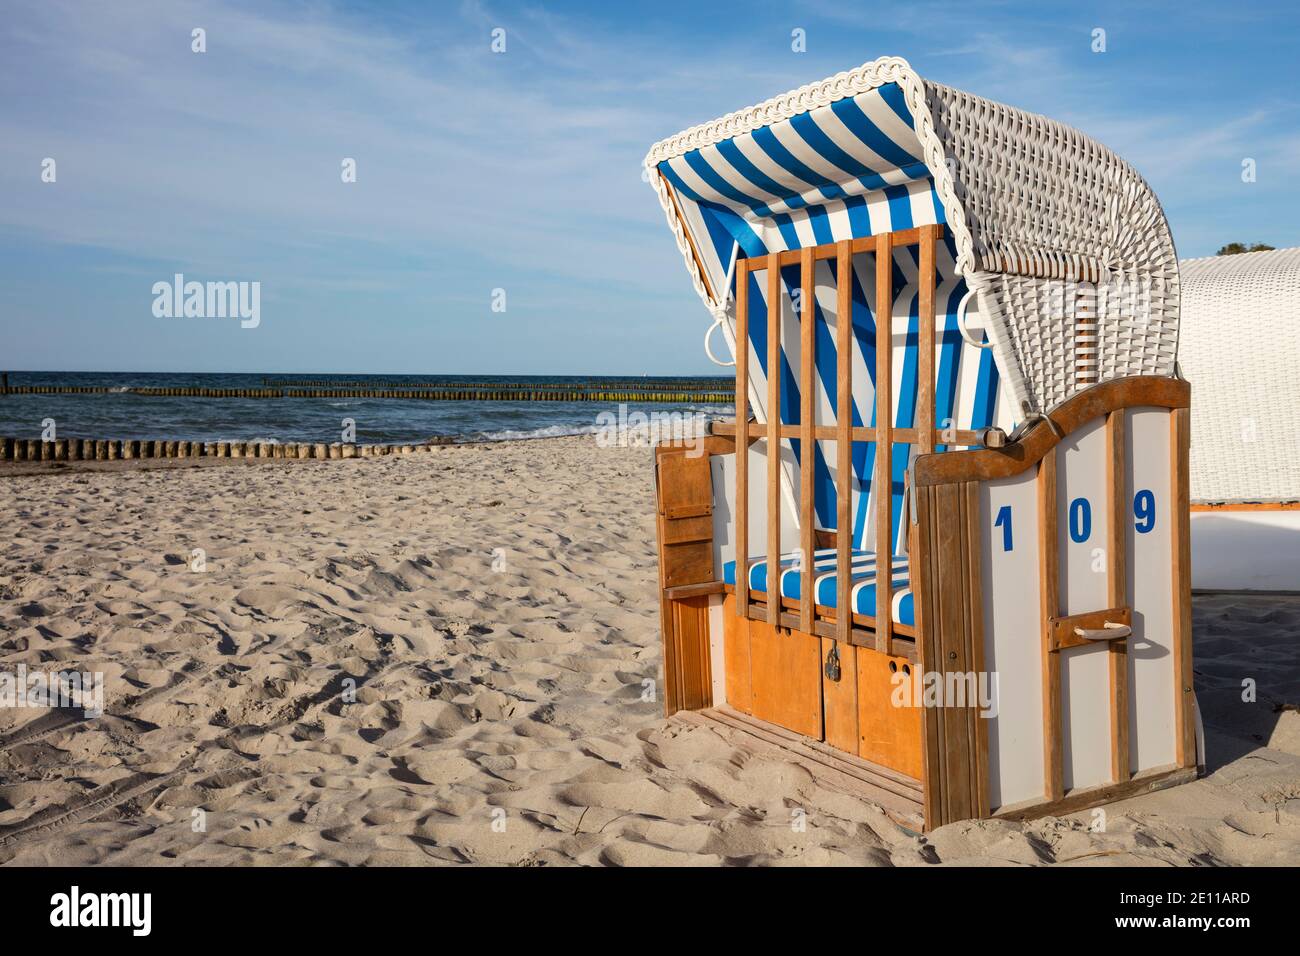 Chaise de plage, Nienhagen, Mer Baltique, Mecklenburg-Ouest Pomerania, Allemagne, Europe Banque D'Images